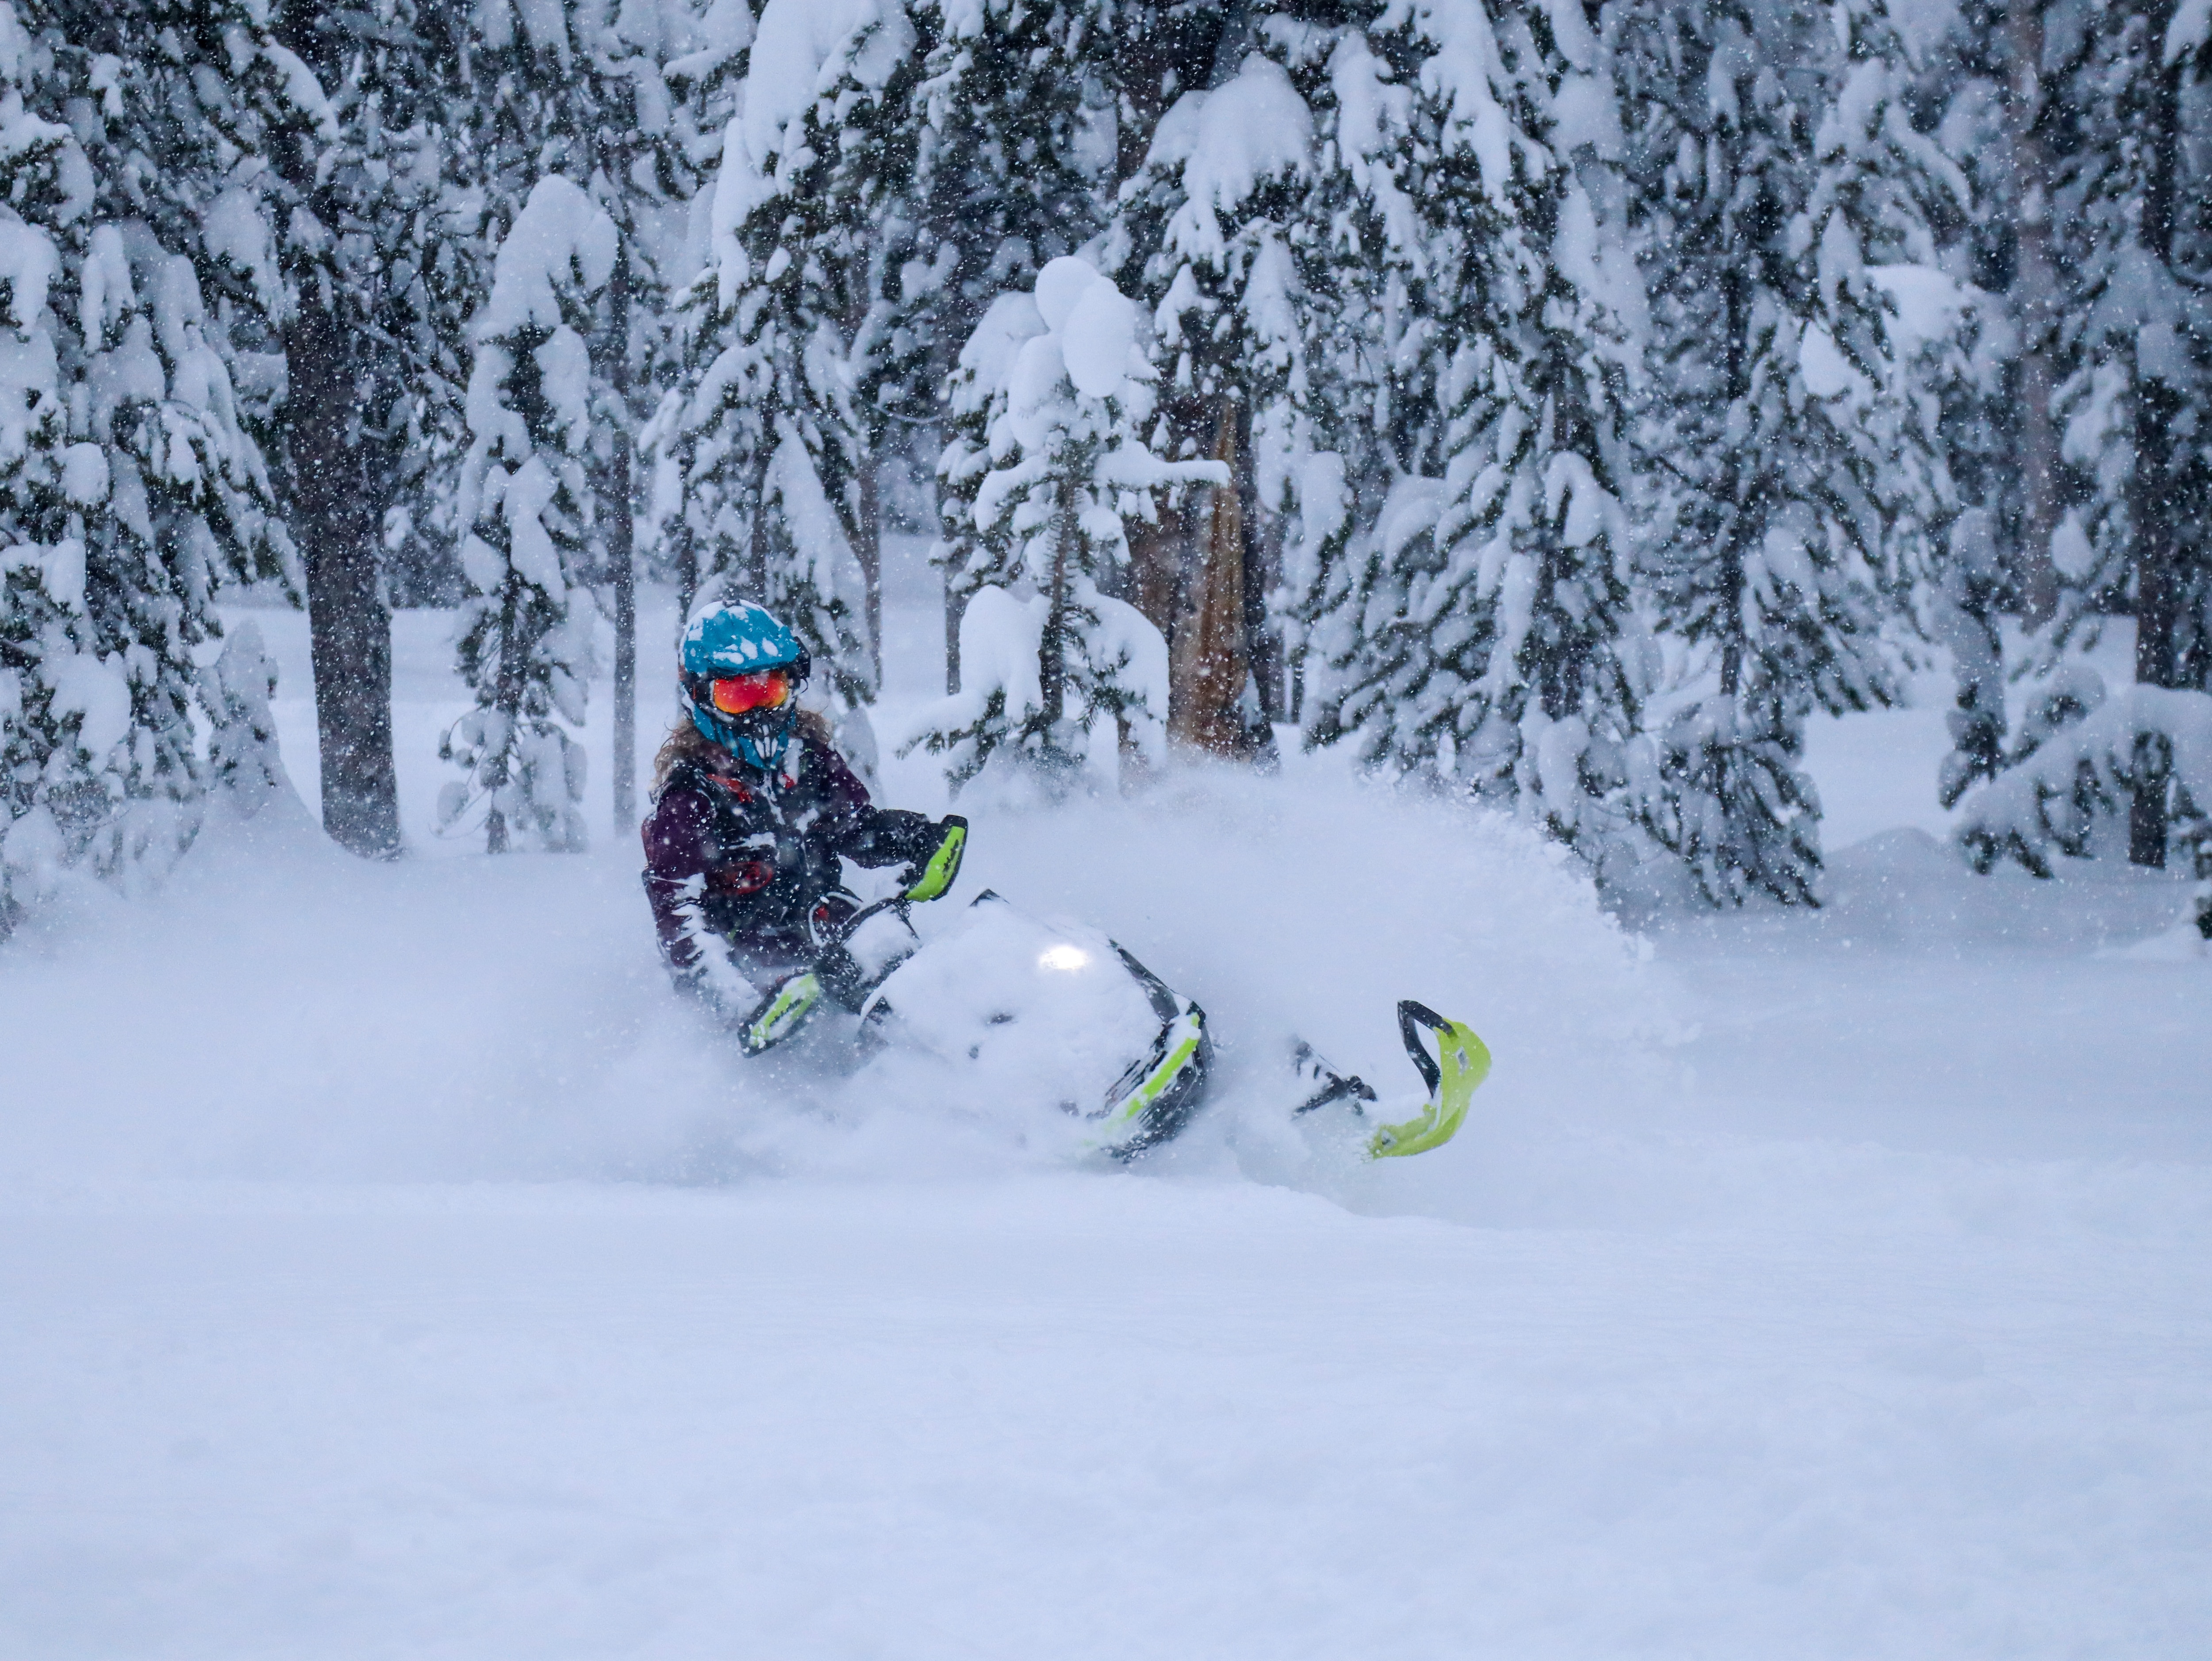 Lisa Granden riding a Ski-Doo